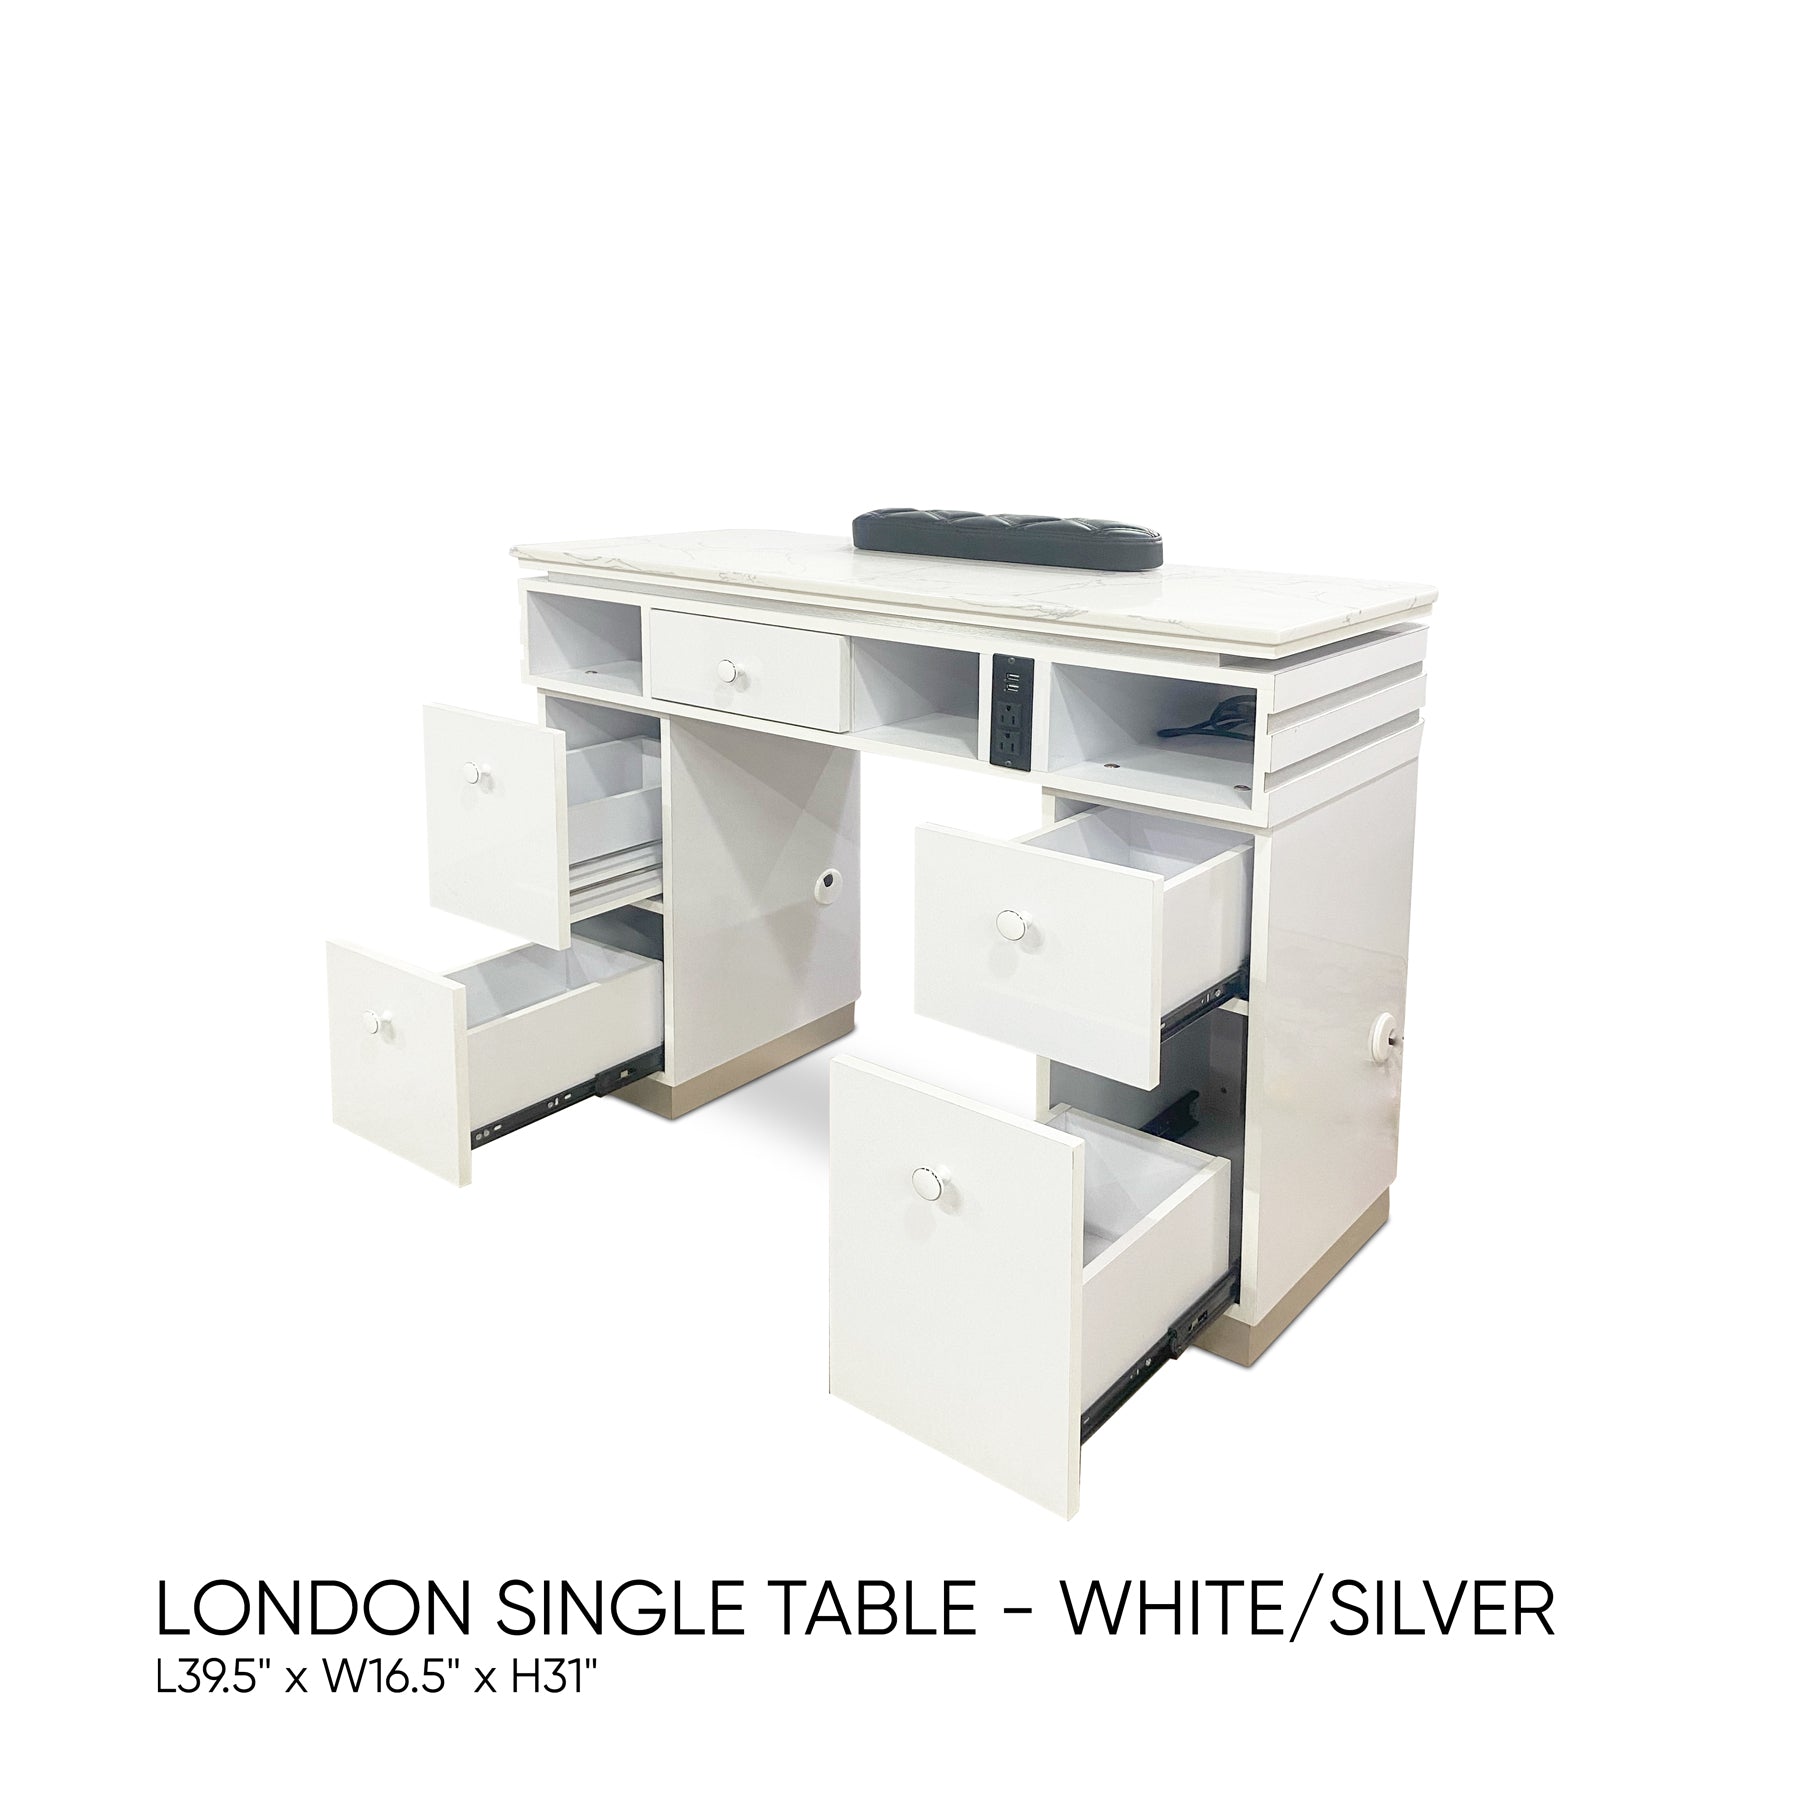 London Single Table - White/Silver